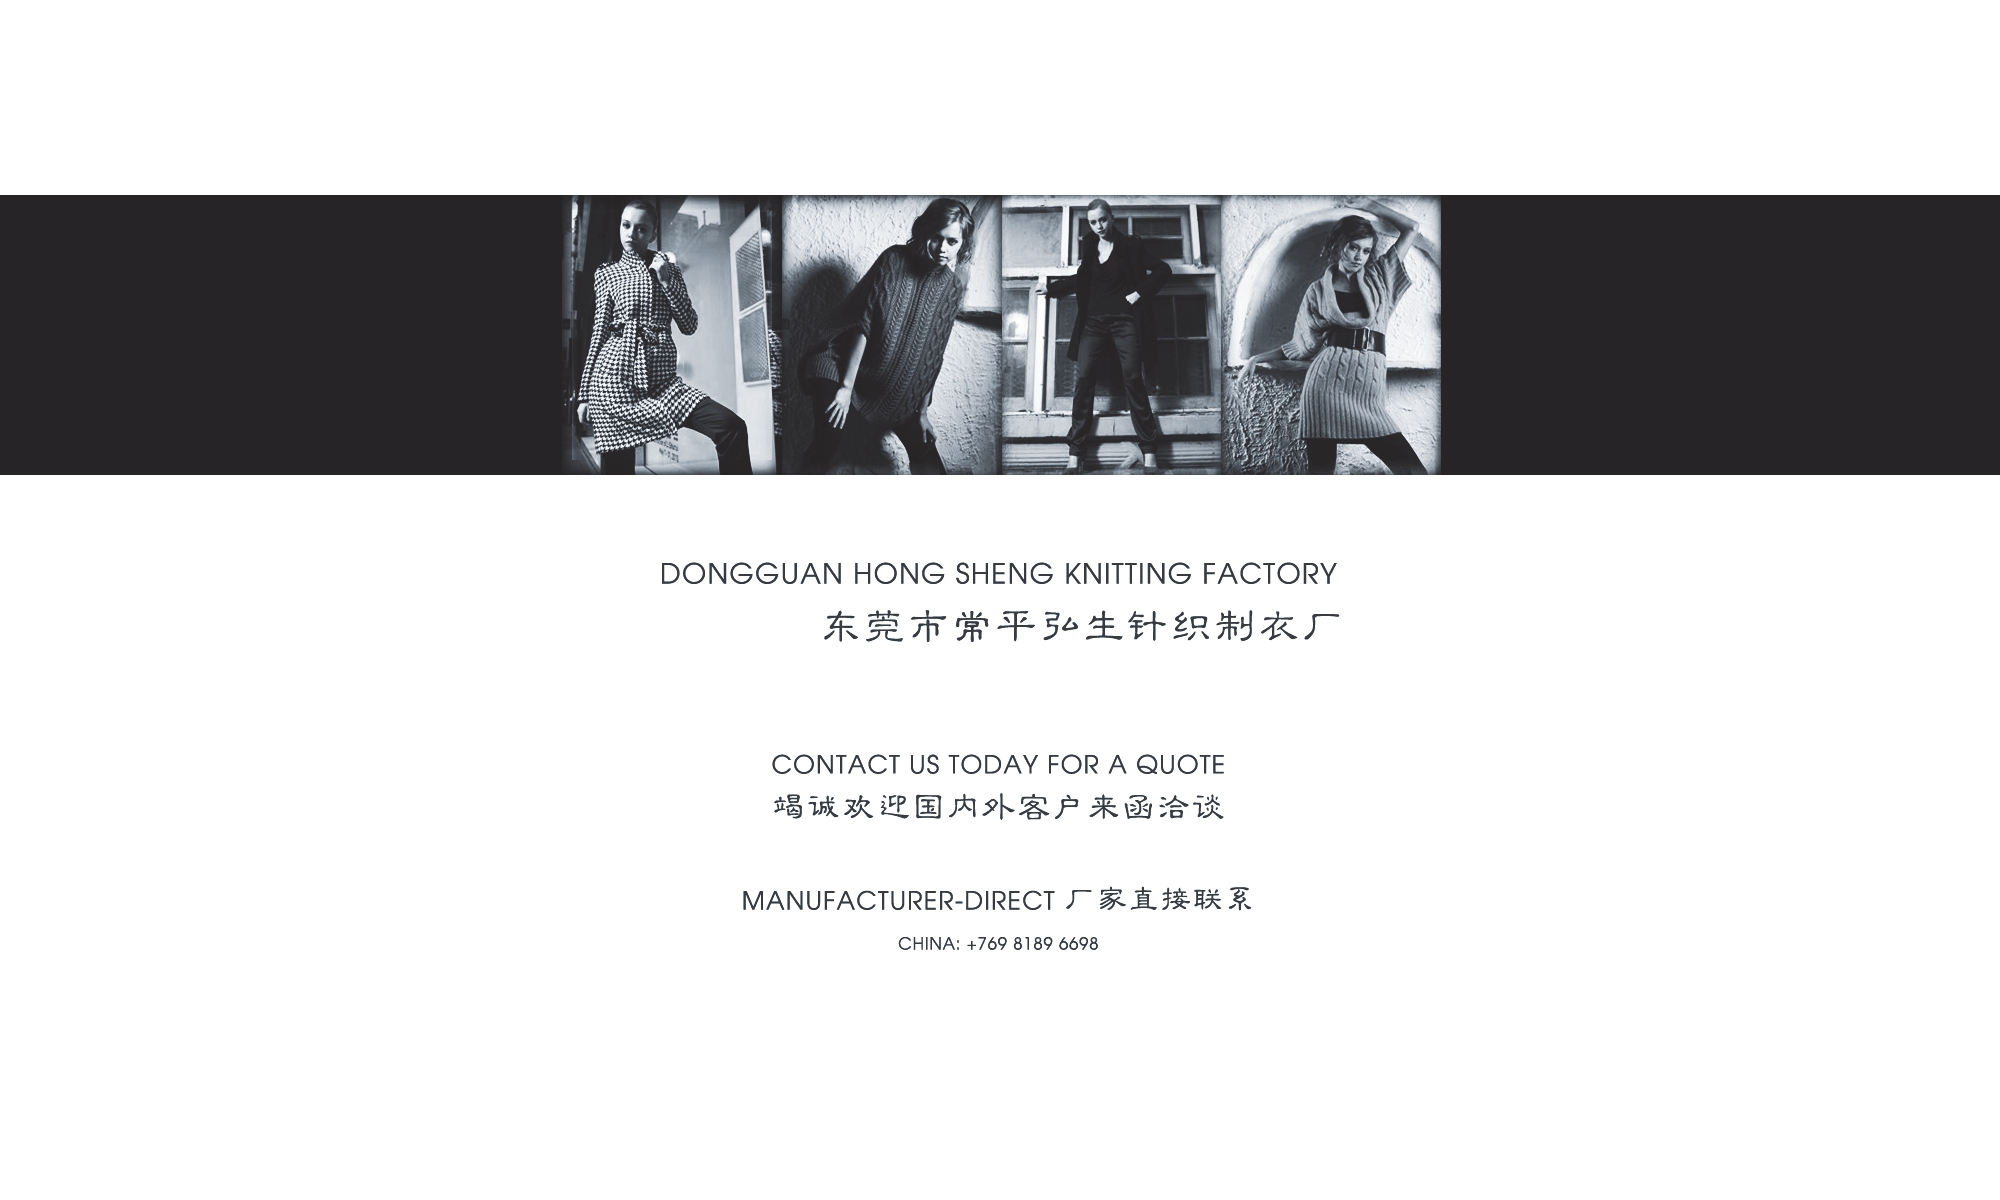 Dongguan Hong Sheng Knitting Factory